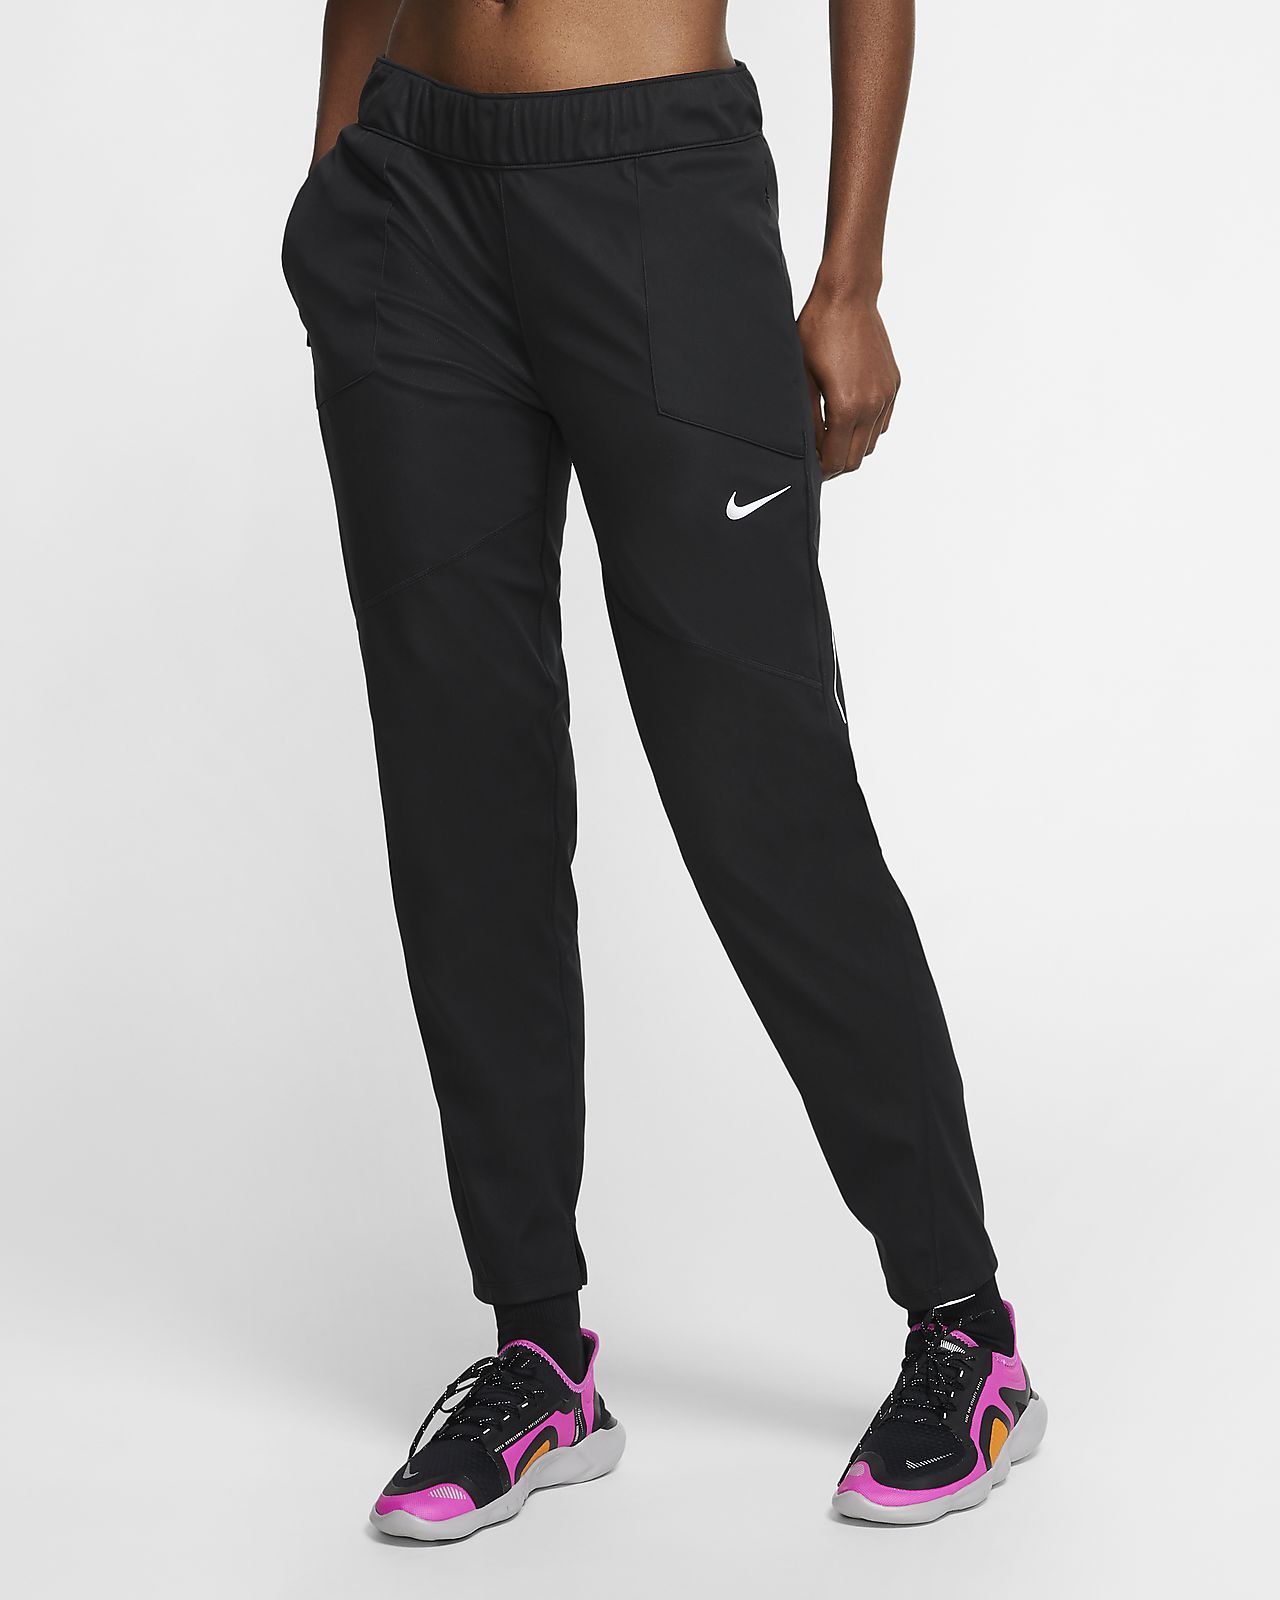 Nike Womens Bottoms Size Chart